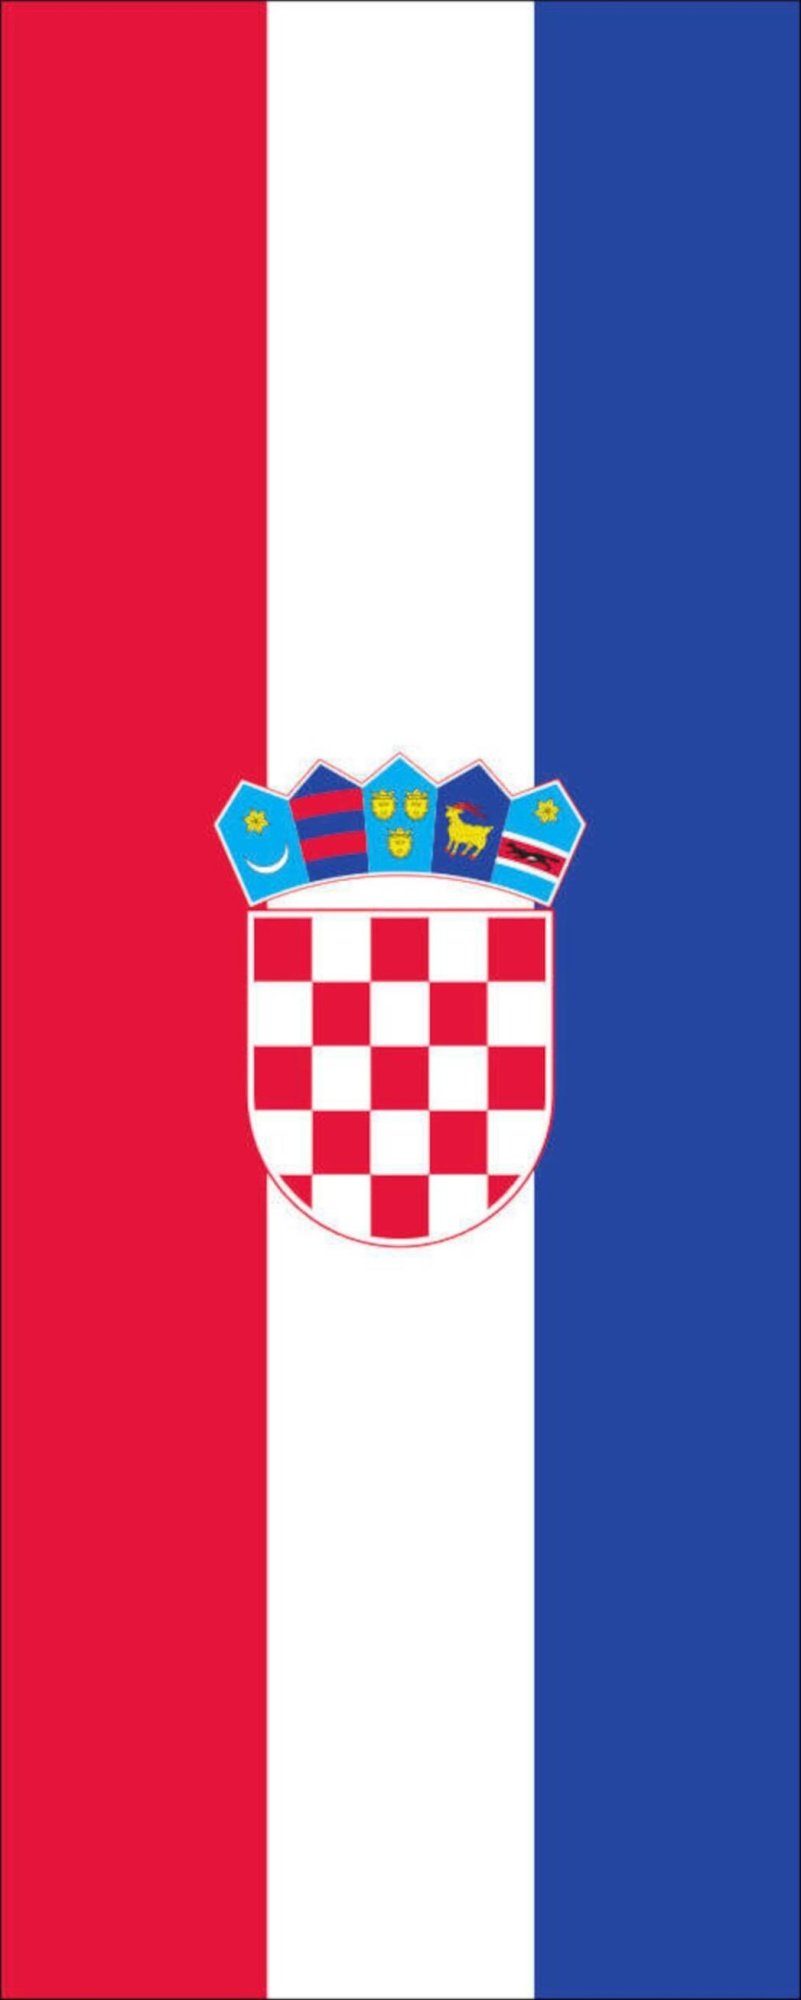 110 flaggenmeer Kroatien g/m² Hochformat Flagge Flagge